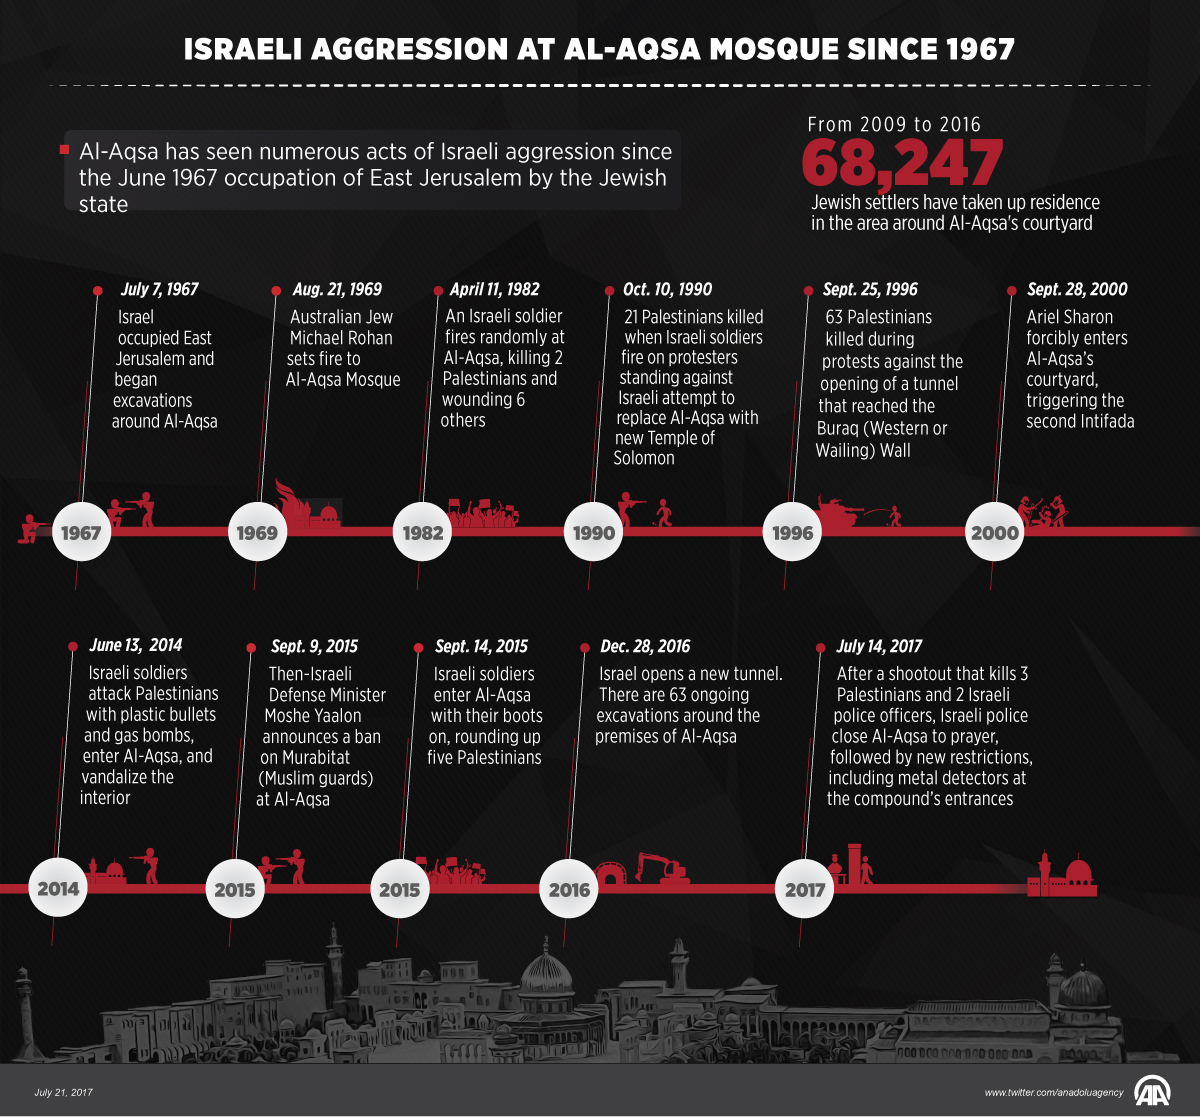 Israel's attacks on Al-Aqsa Mosque since 1967